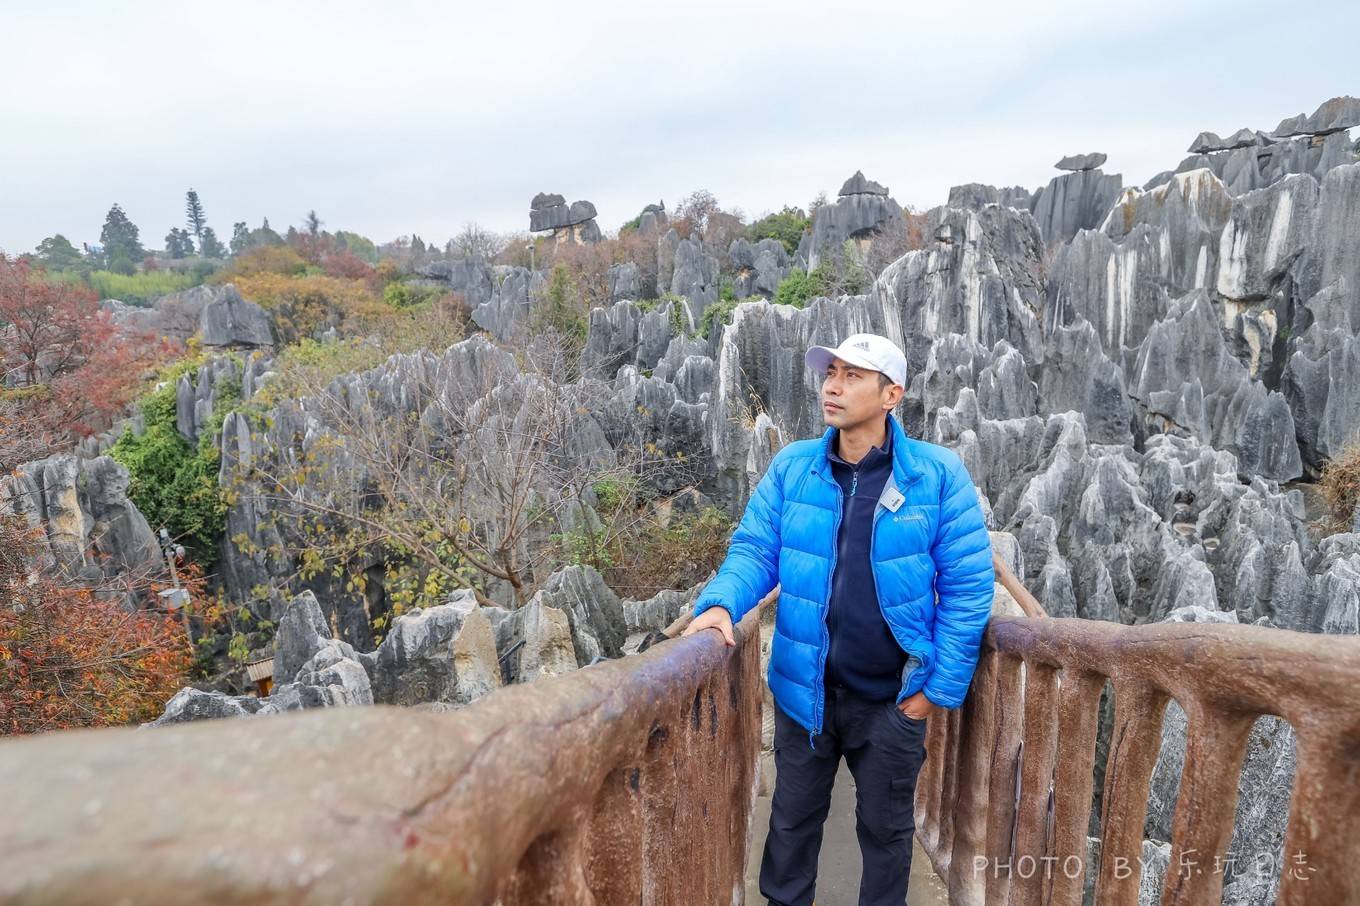 云南石林，亿万年形成的地质奇观，原生态人文风情，超适合周末游